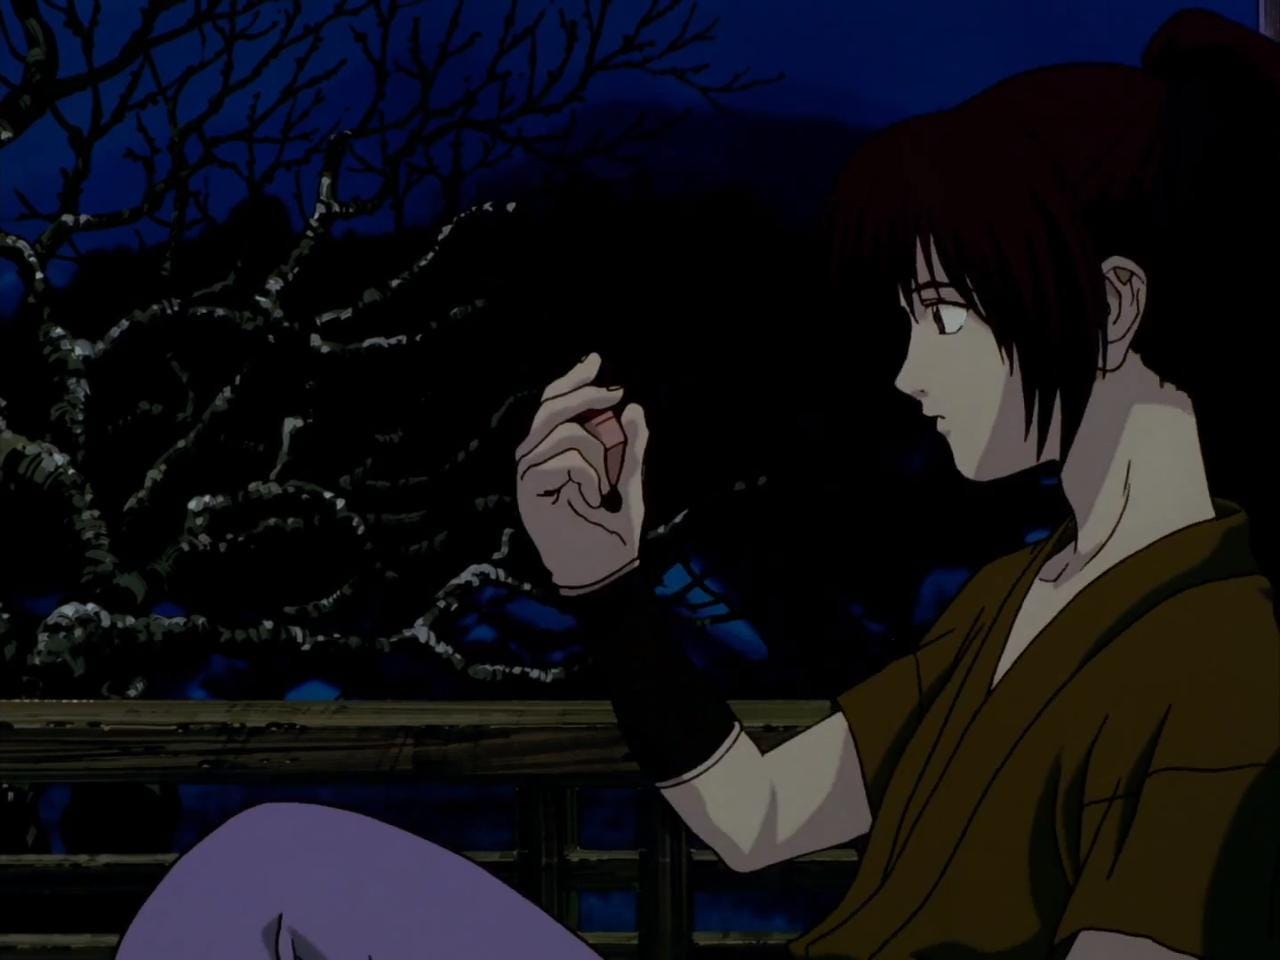 Assistir Rurouni Kenshin: Meiji Kenkaku Romantan - Episódio - 10